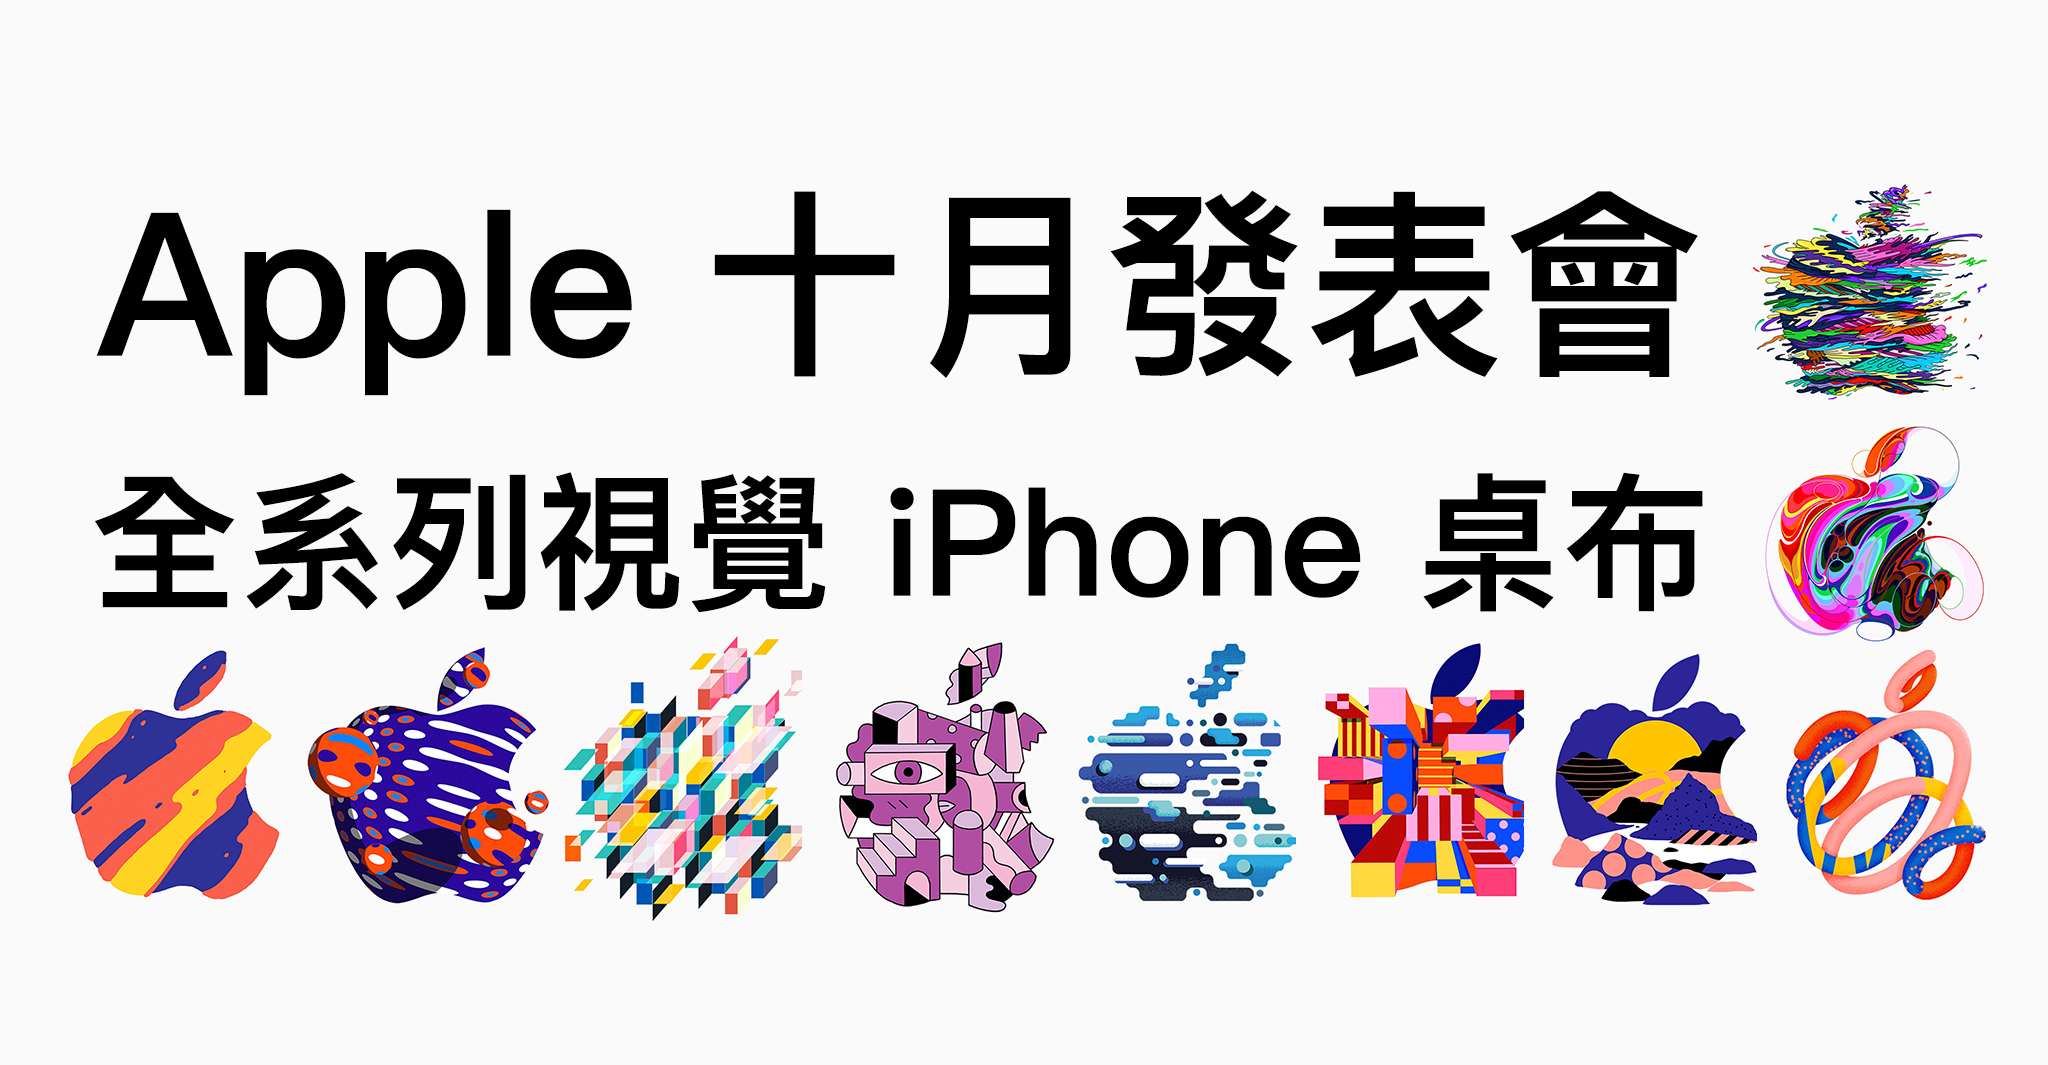 蘋果18 十月發表會全系列視覺iphone 桌布下載 蘋果仁 你的科技媒體